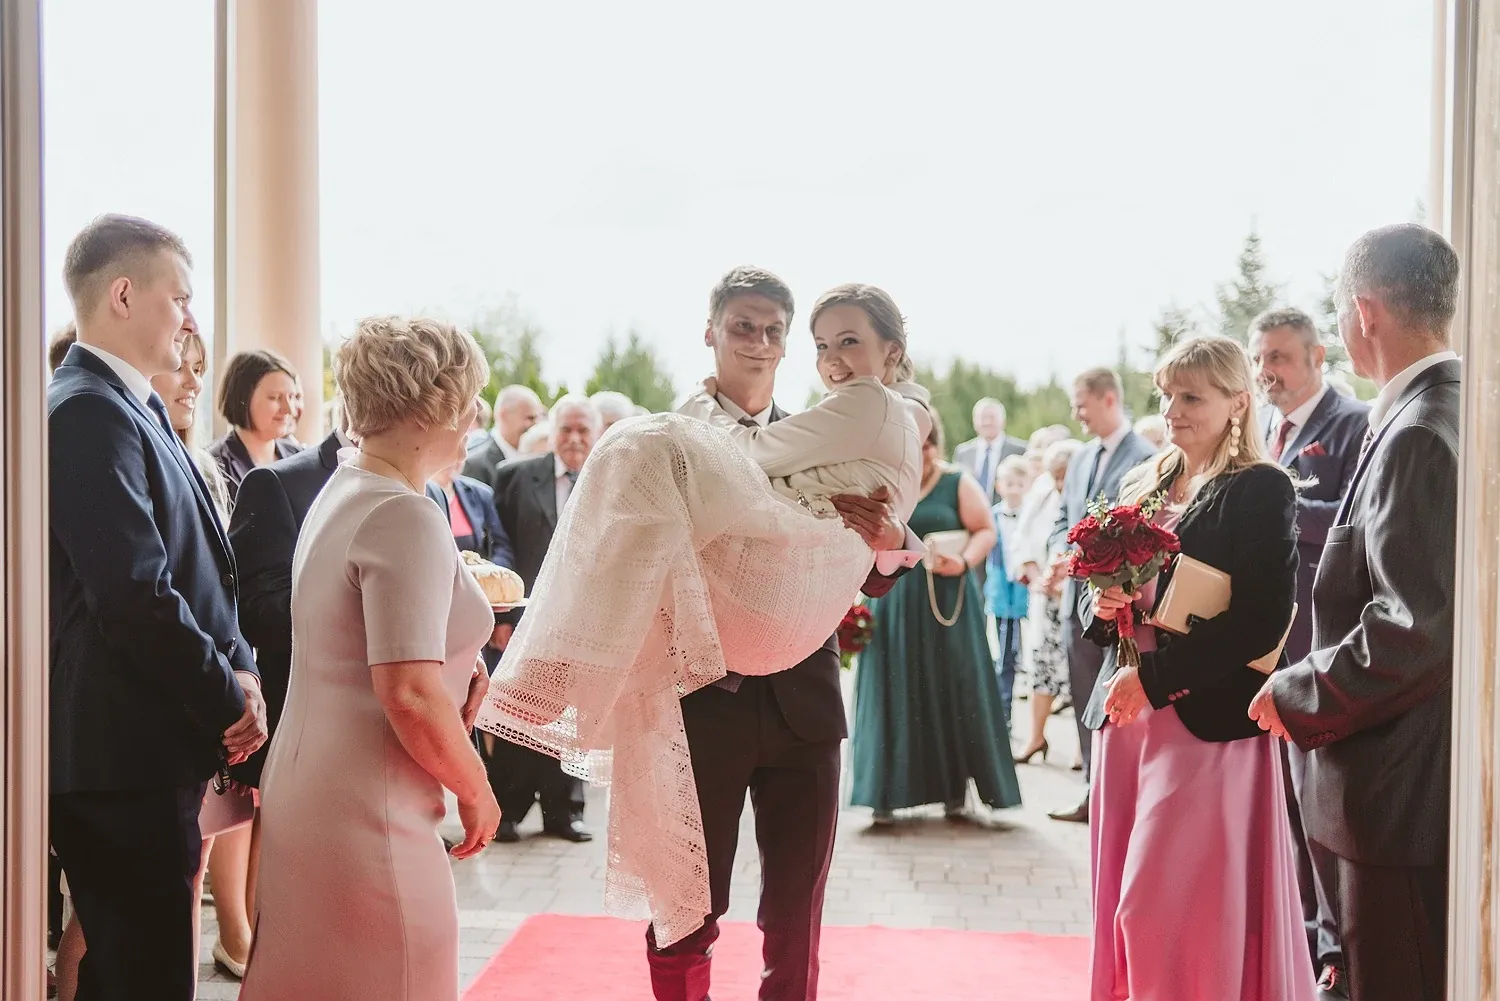 paulinamateusz_wedding_14.webp - Paulina & Mateusz- Monika Chmielewska - wedding, portaits, family photography - Munich